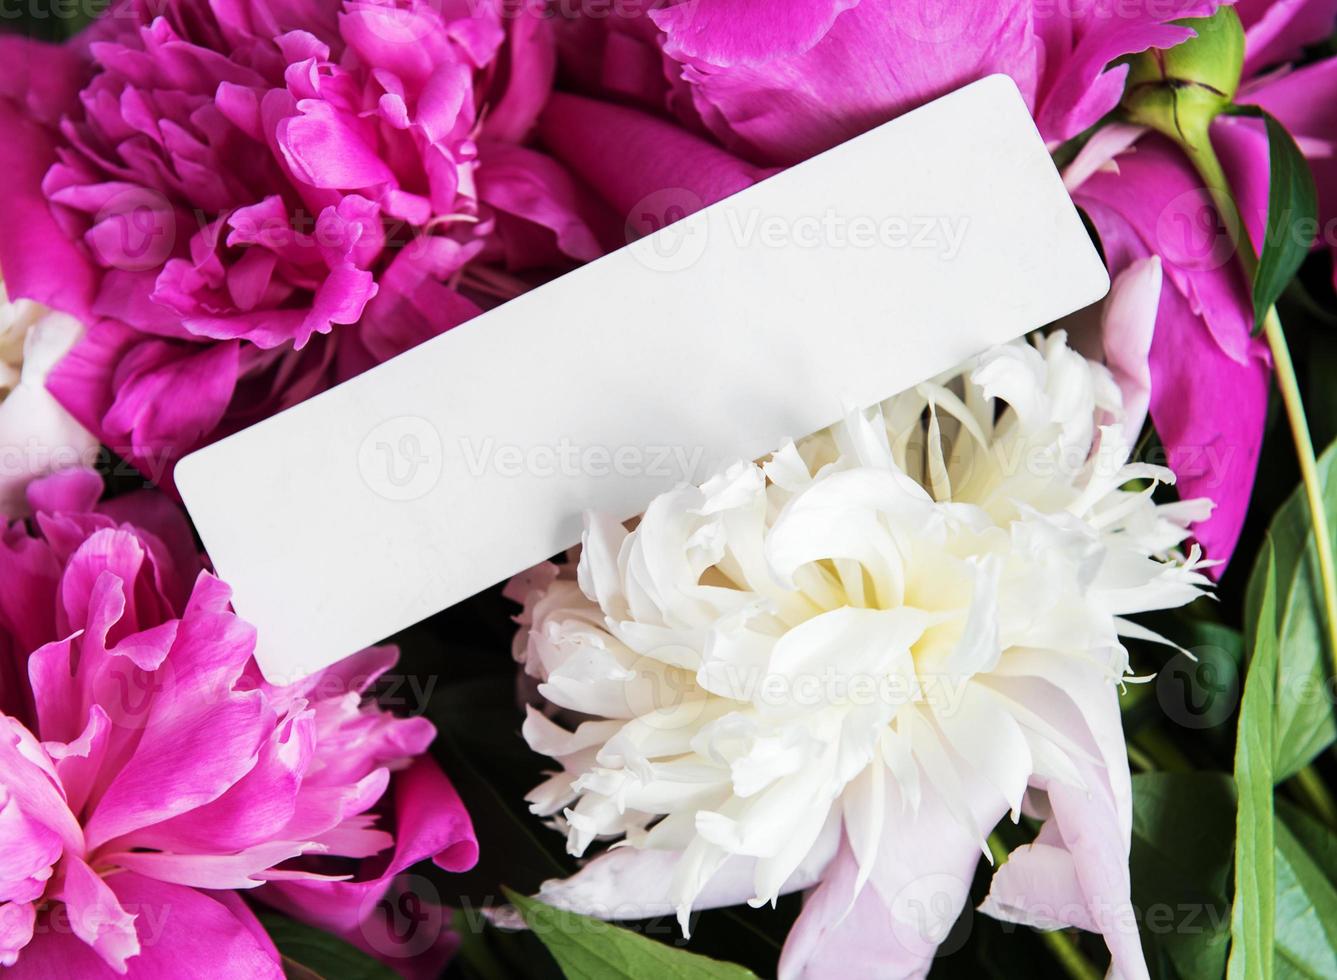 cartão de convite e flores de peônia rosa foto